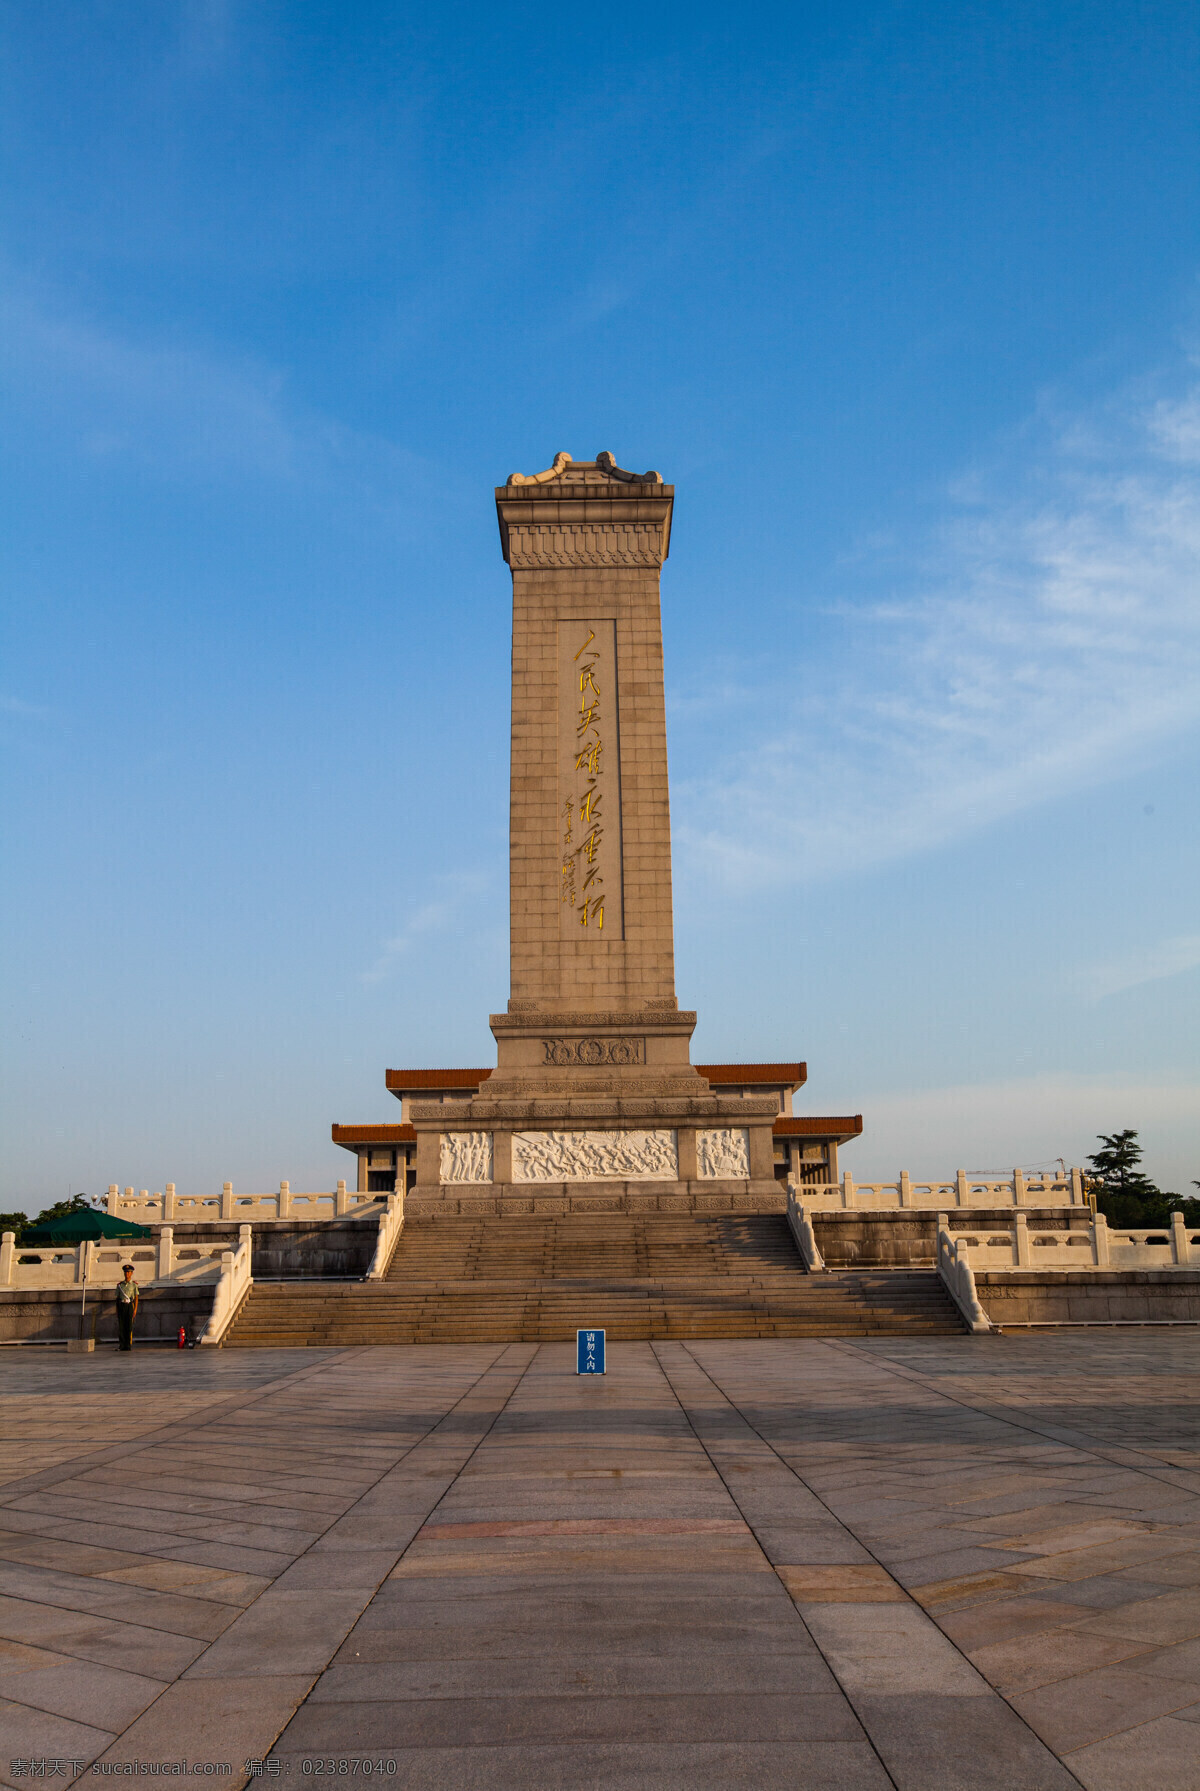 人民英雄 纪念碑 北京 天安门广场 傍晚 建筑 雄伟 石碑 雕刻 建筑摄影 自助游 国内旅游 旅游摄影 人民英雄纪念碑